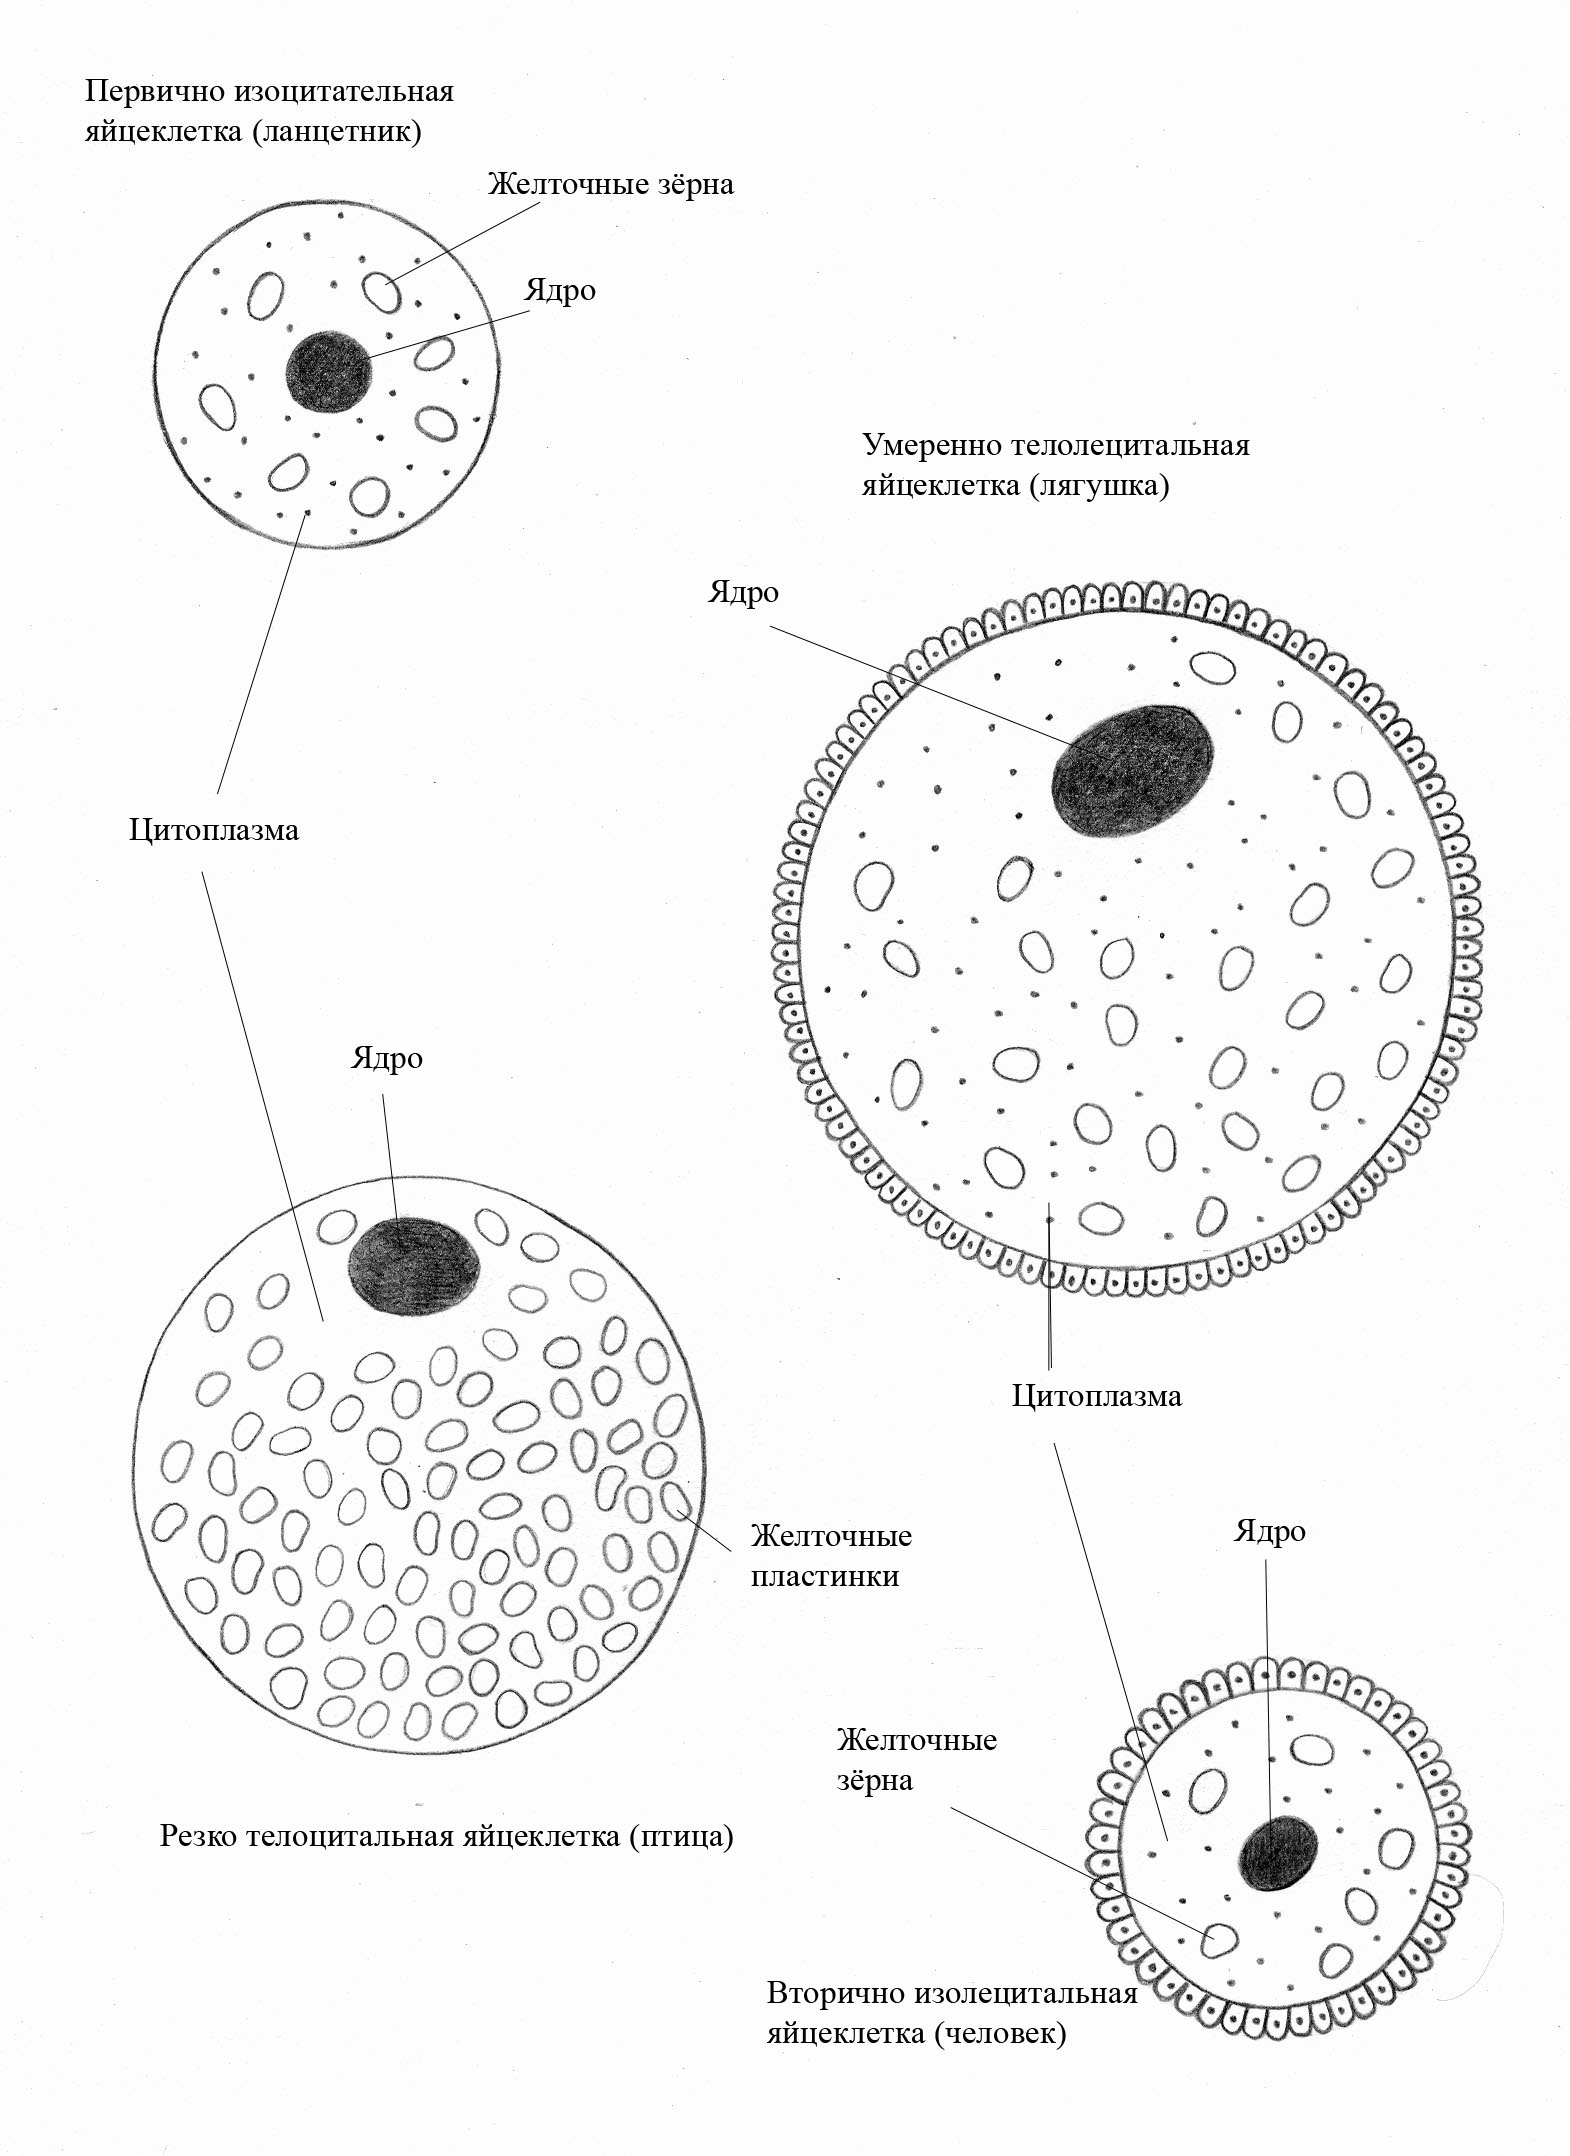 Морфология по Крюгеру (оценка внешнего строения сперматозоидов)